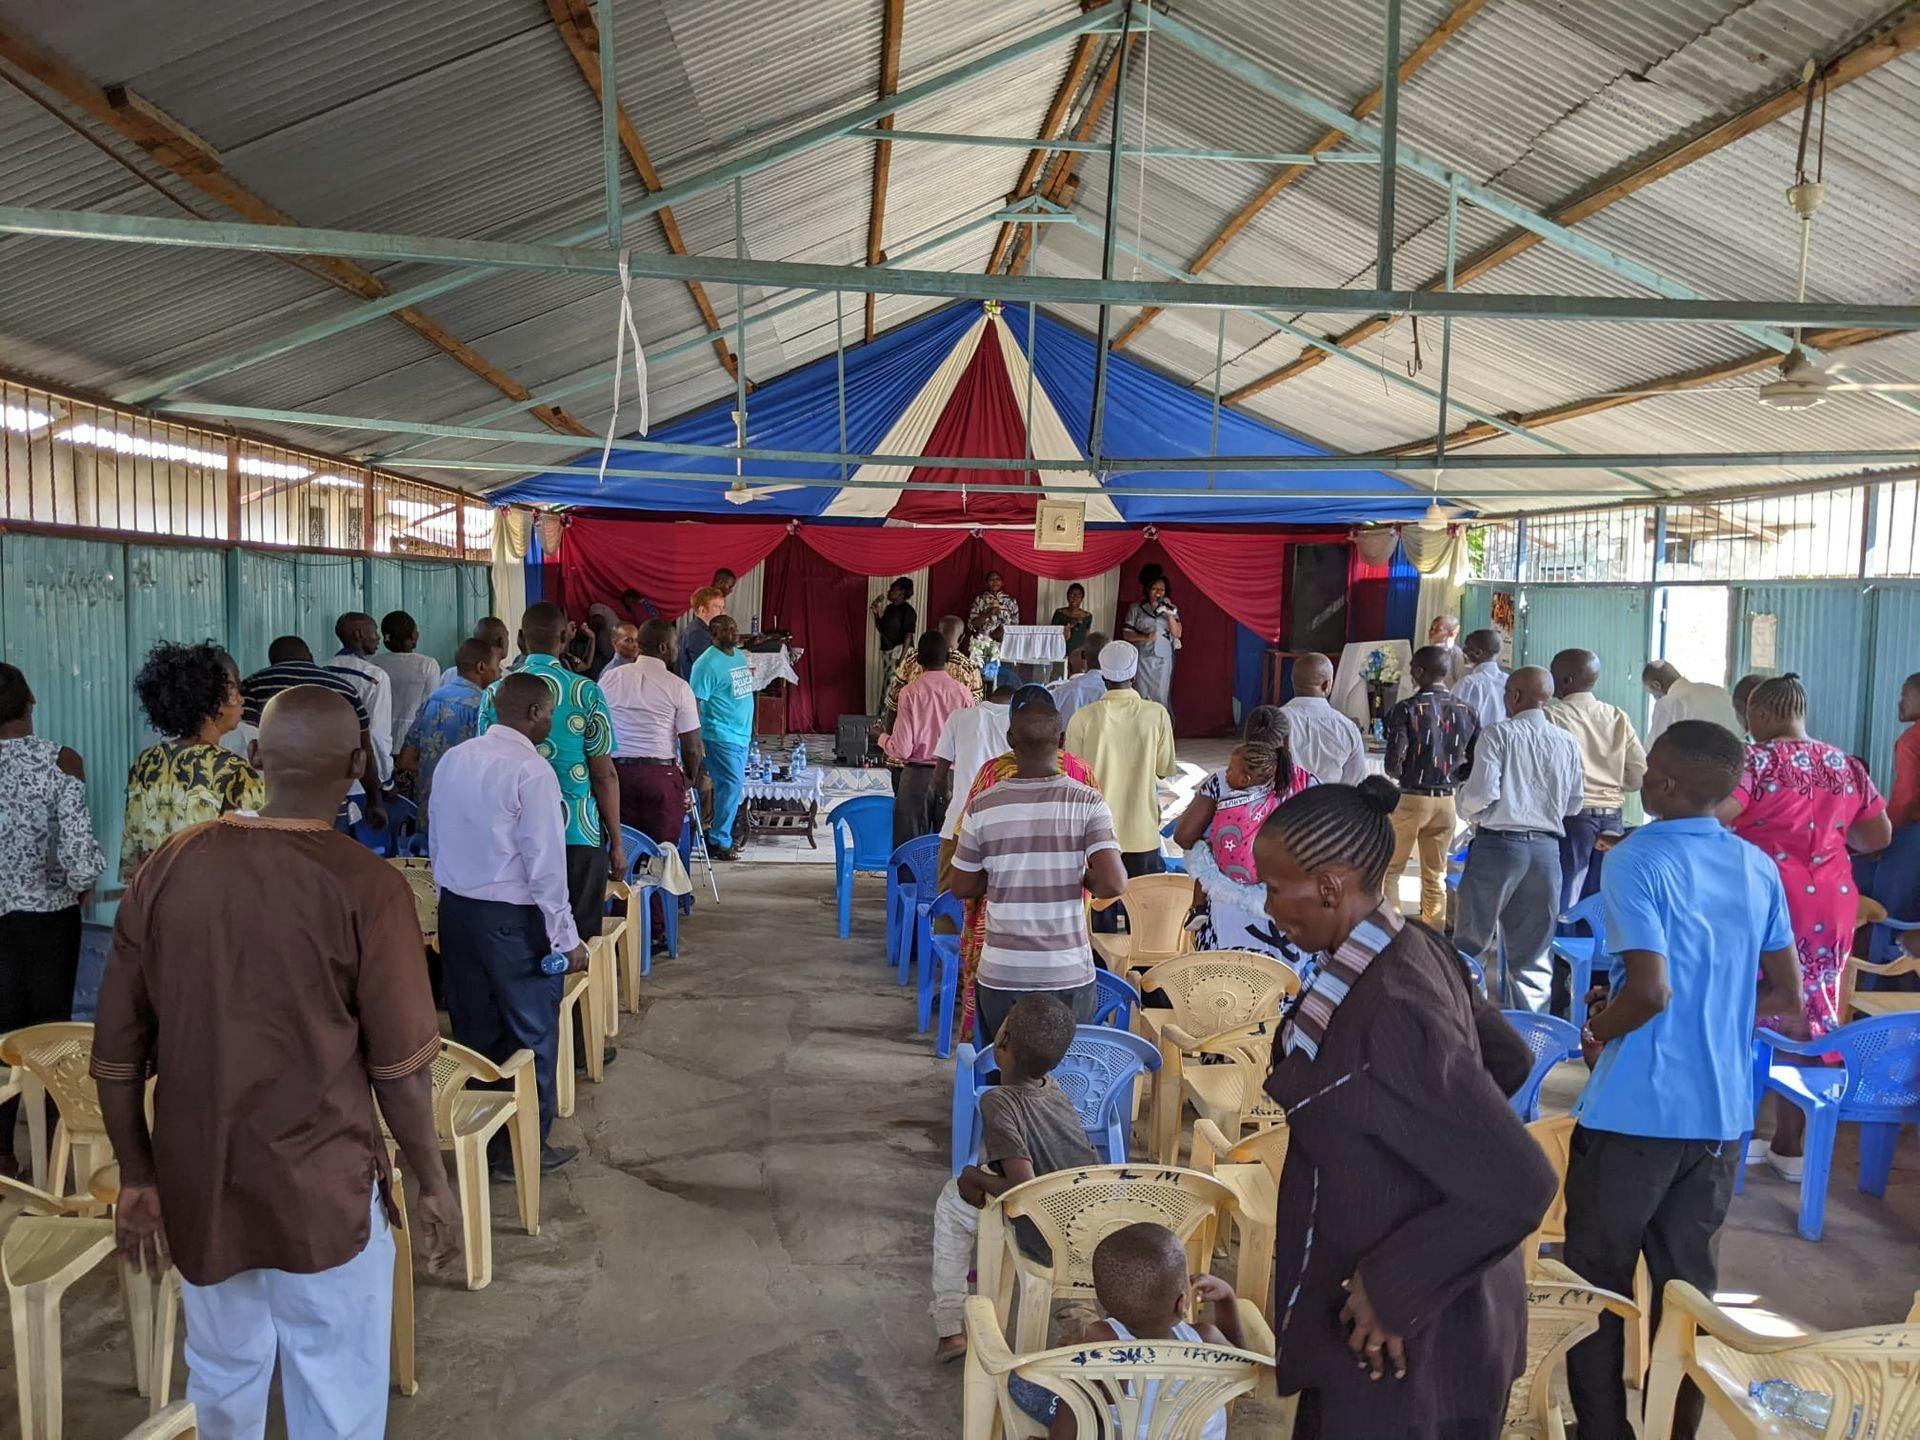 Church service in Africa. 